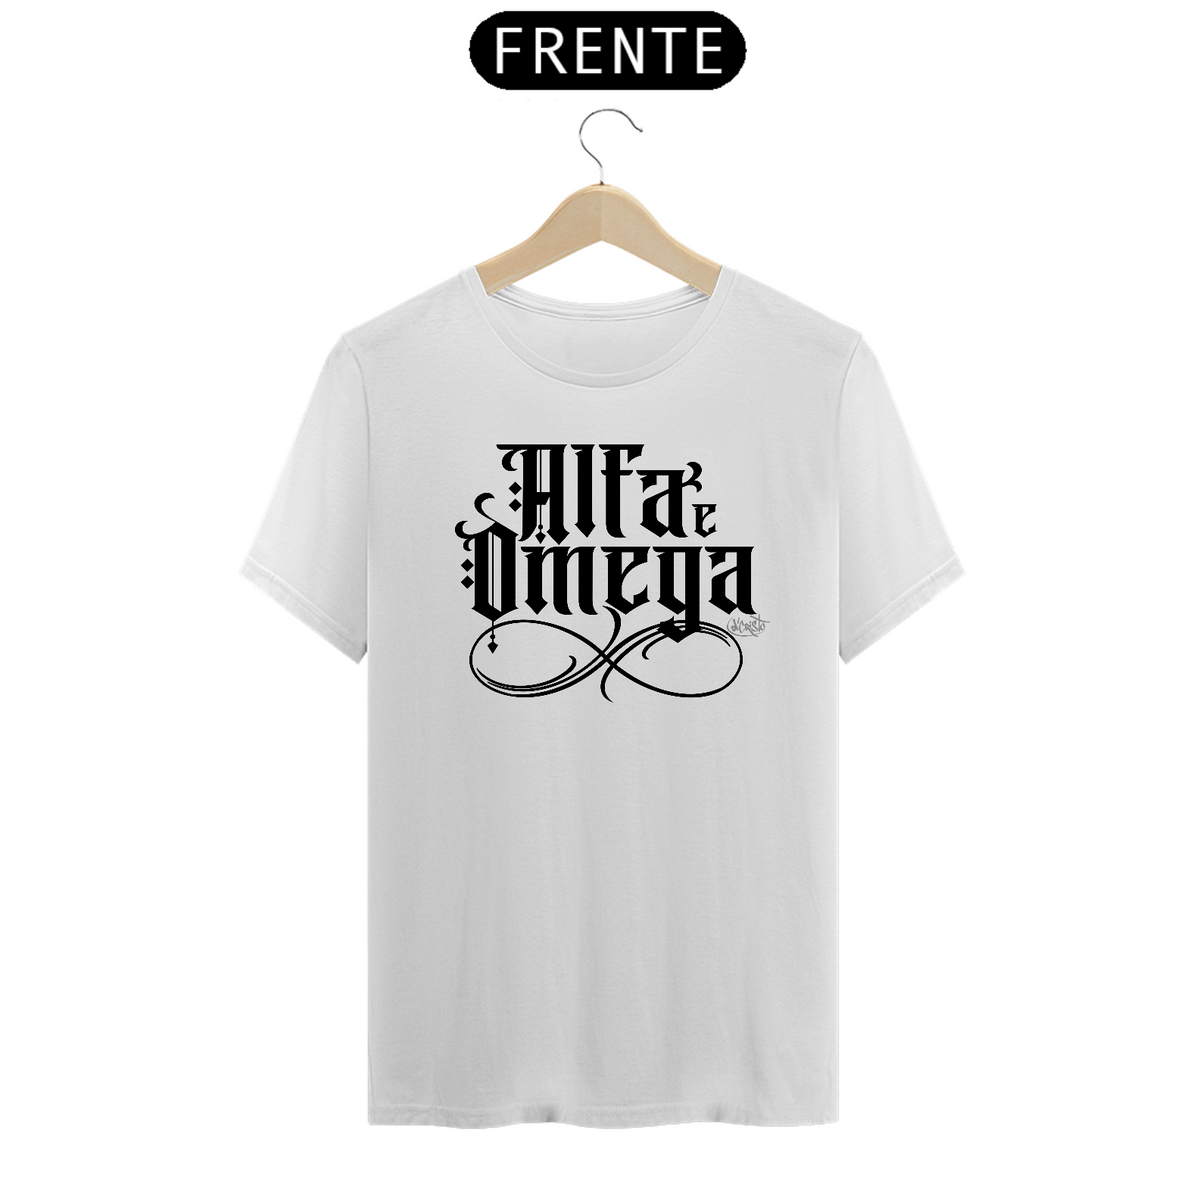 Nome do produto: Camiseta Alfa e Omega (cores claras)